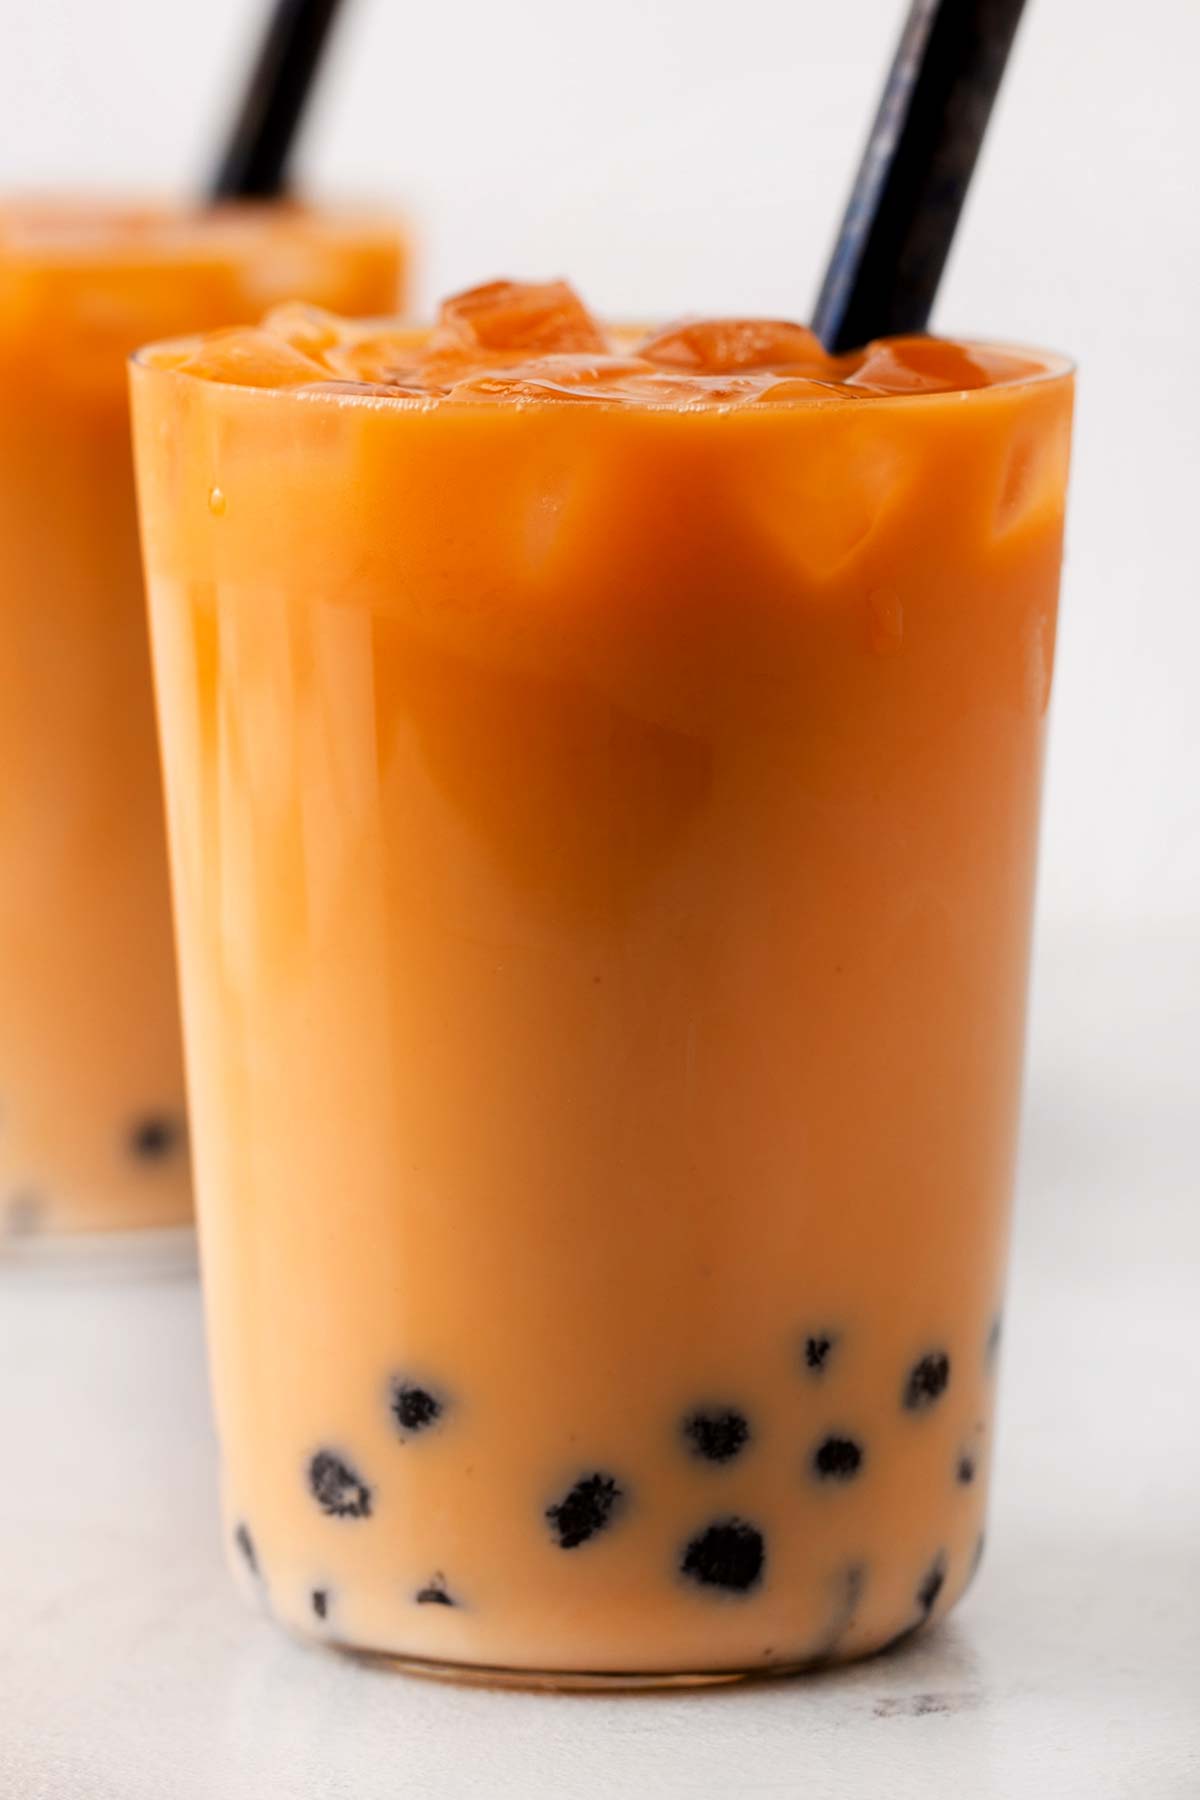 Bright orange Thai bubble tea in a glass with a black straw.